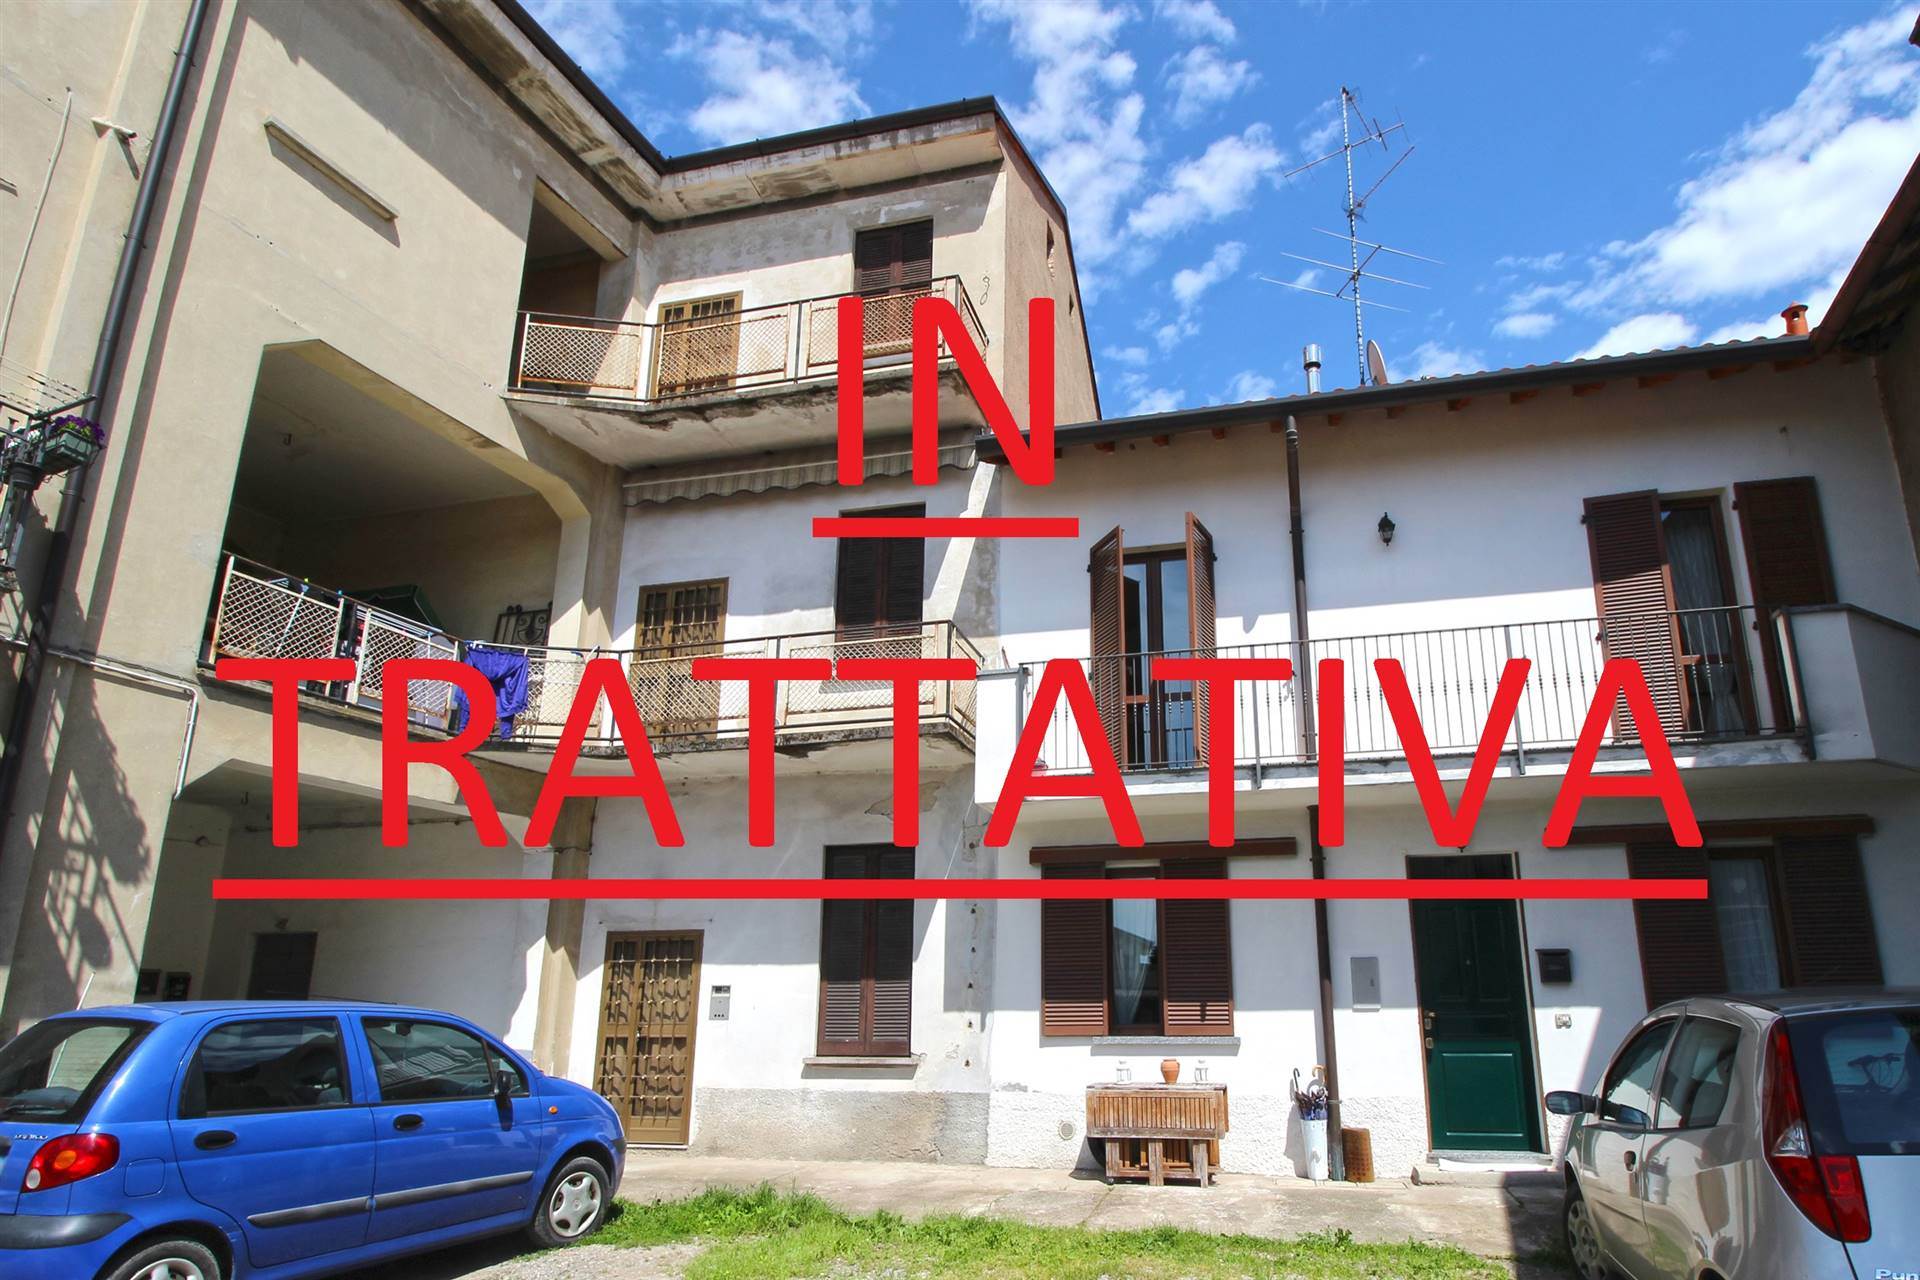 Rustico / Casale in vendita a Cogliate, 6 locali, prezzo € 125.000 | PortaleAgenzieImmobiliari.it